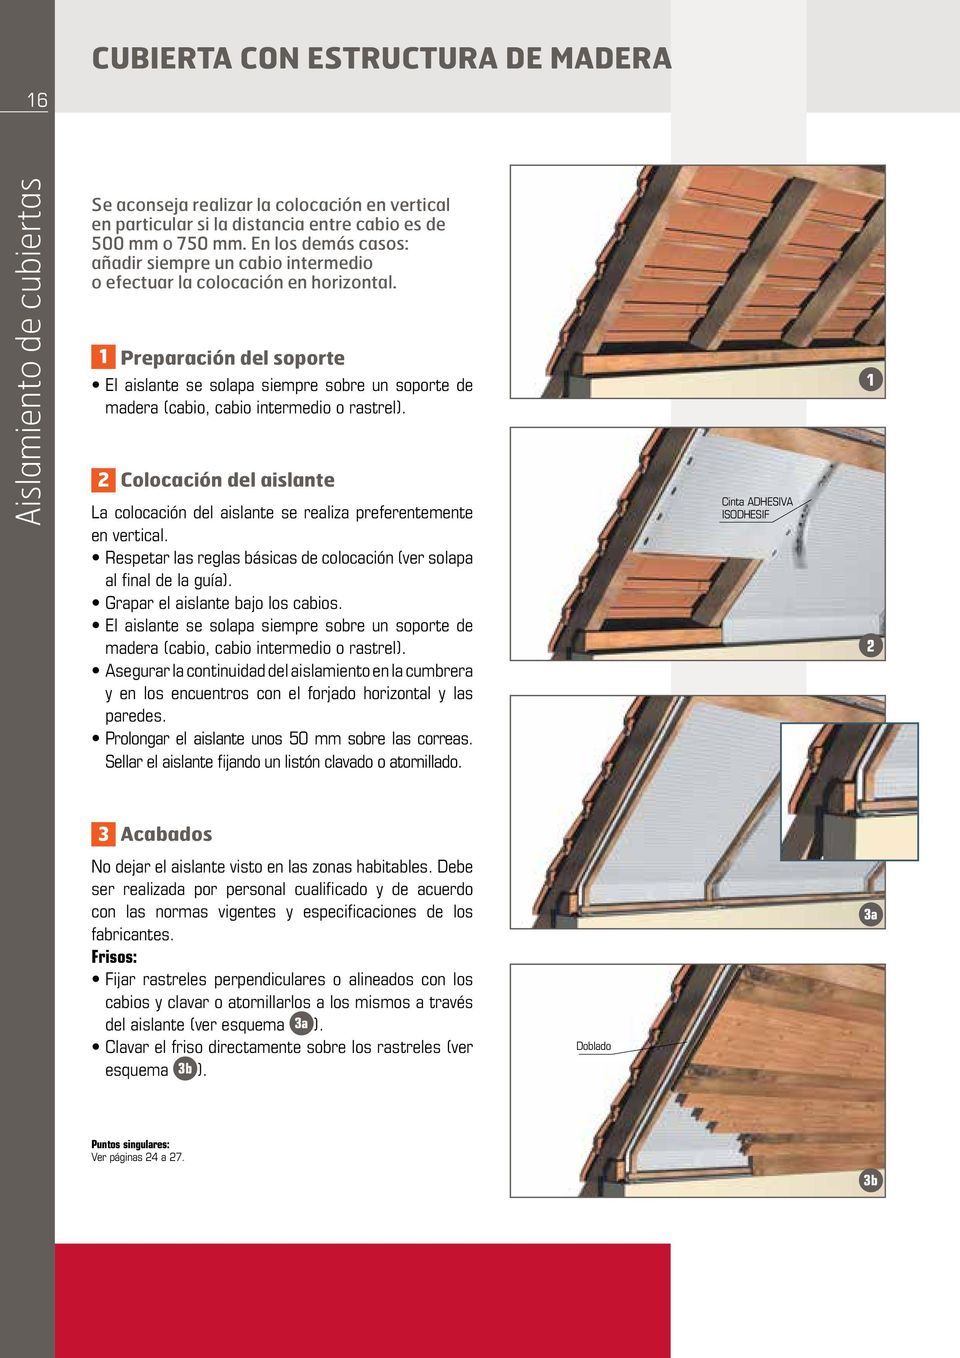 1 Preparación del soporte El aislante se solapa siempre sobre un soporte de madera (cabio, cabio intermedio o rastrel).